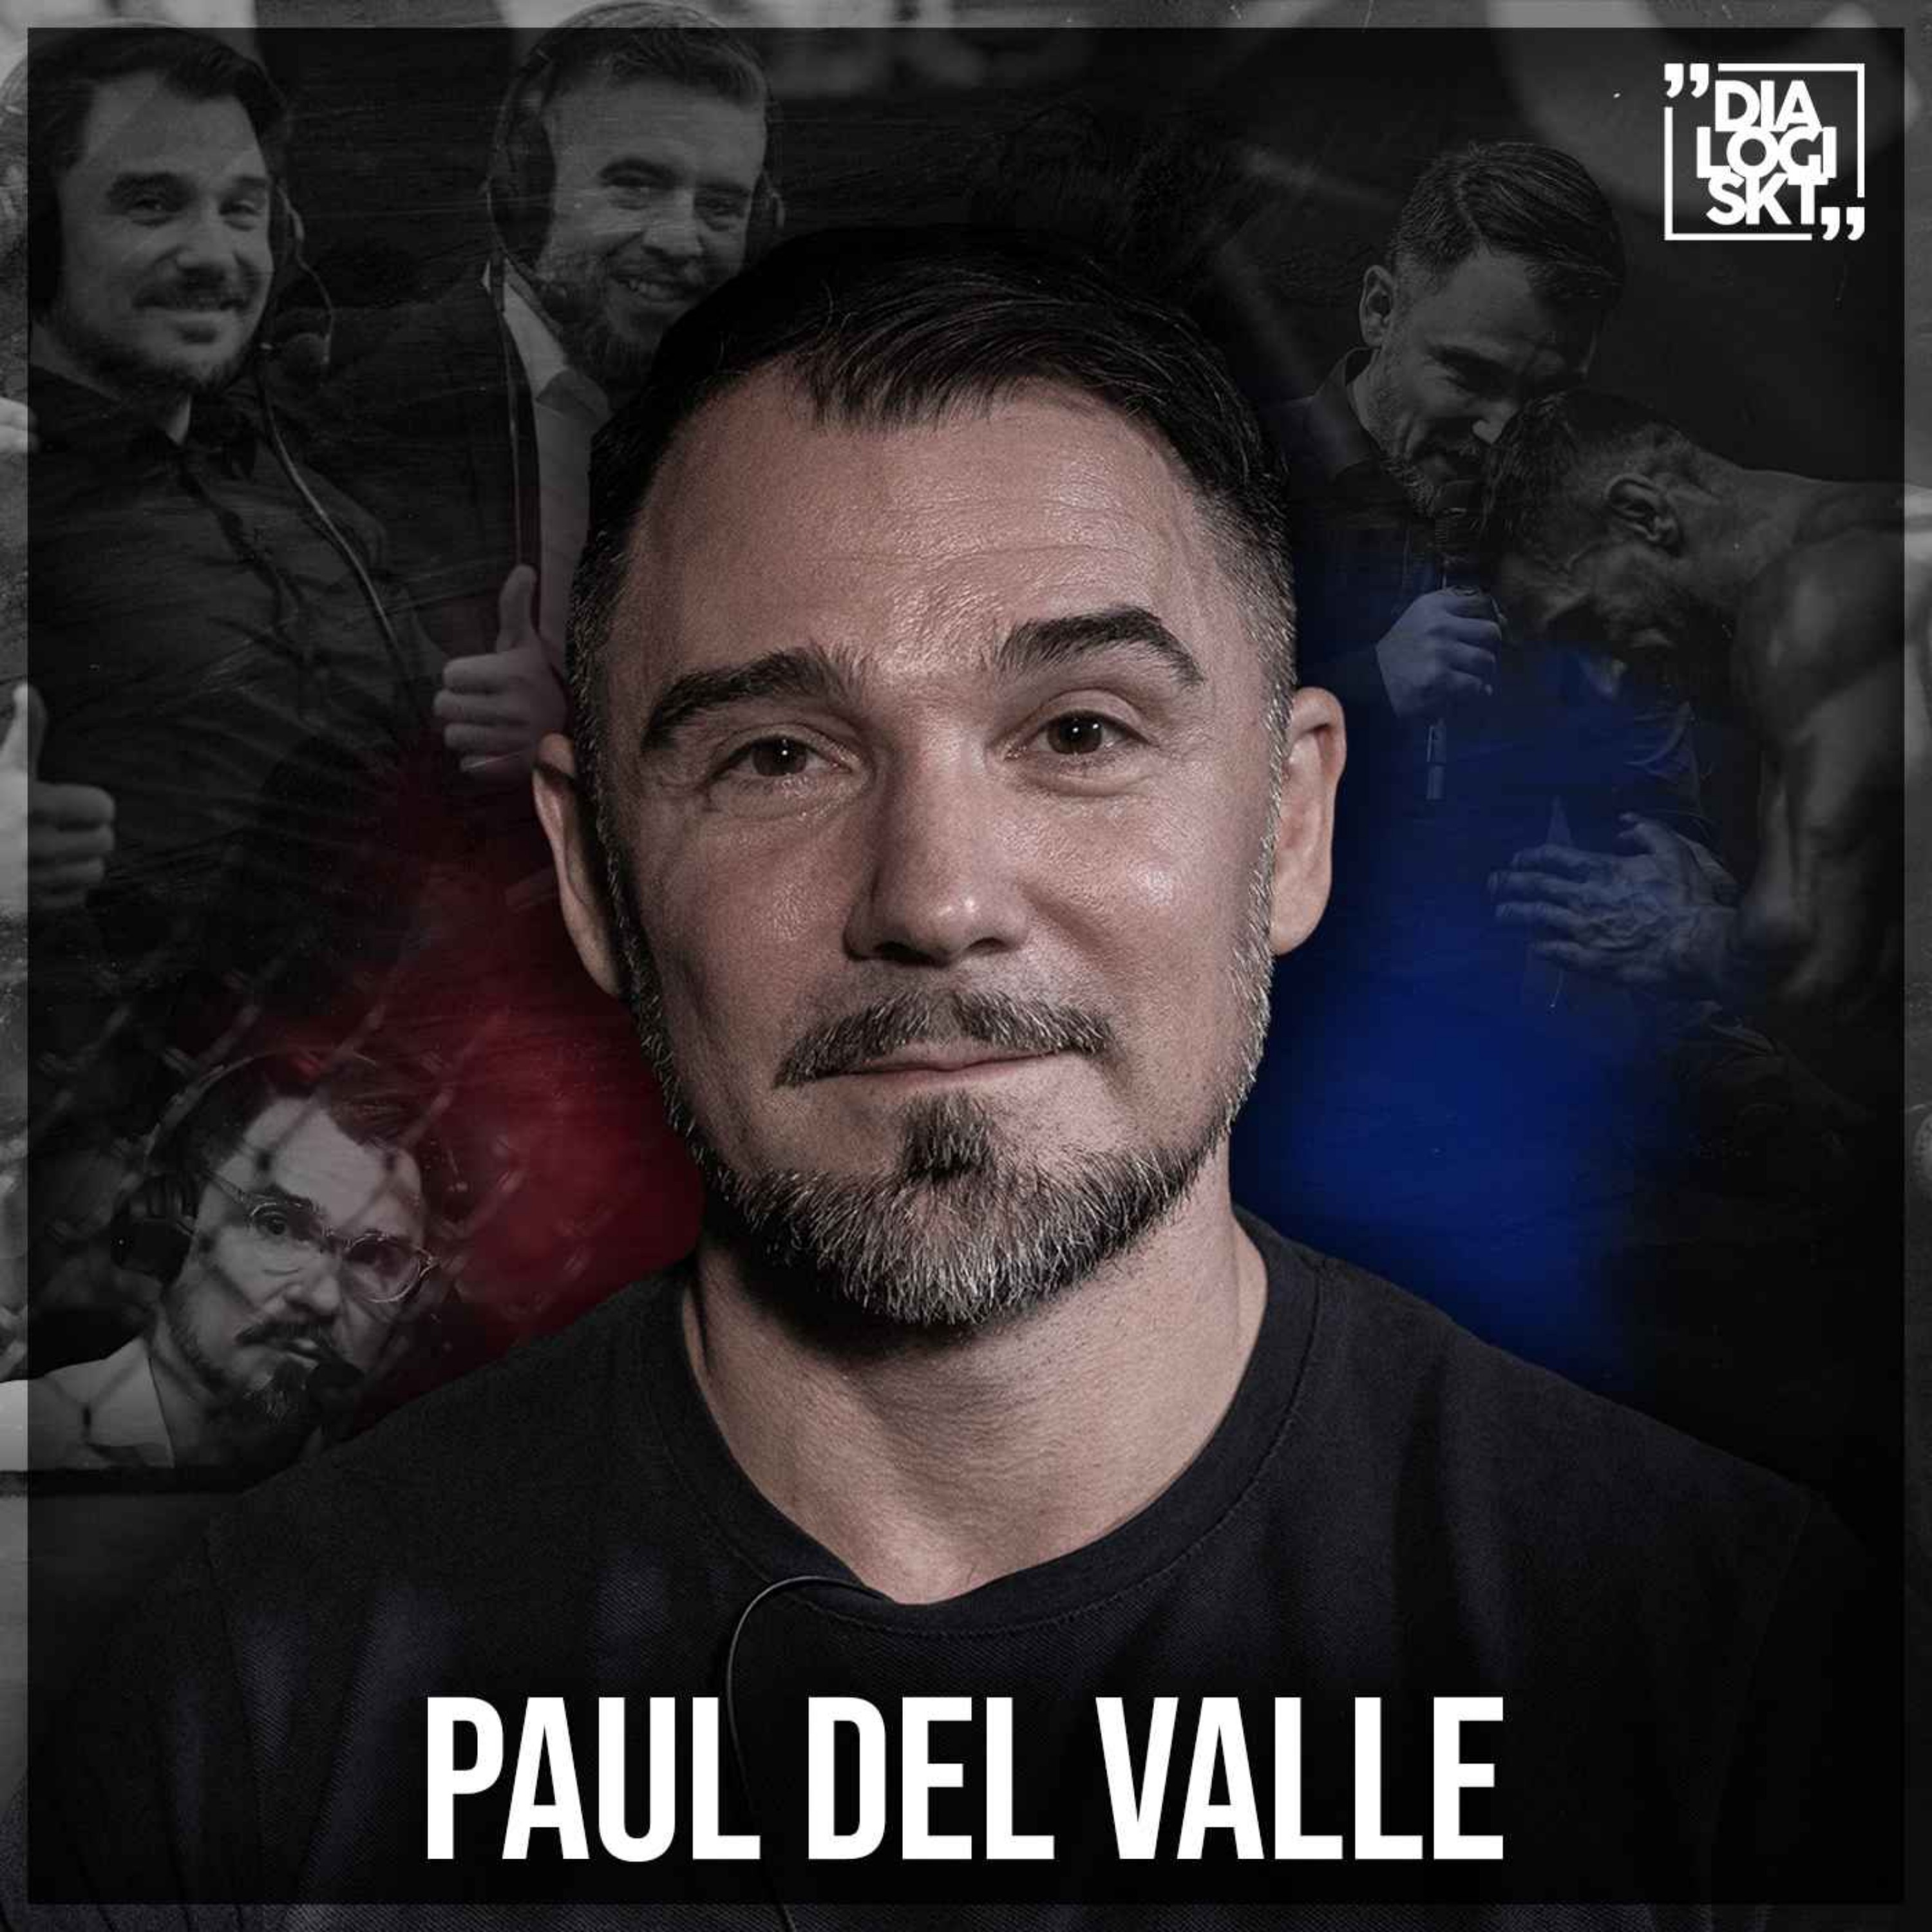 cover art for #133 Paul del Valle ”MMA, KOMIK & SORG”